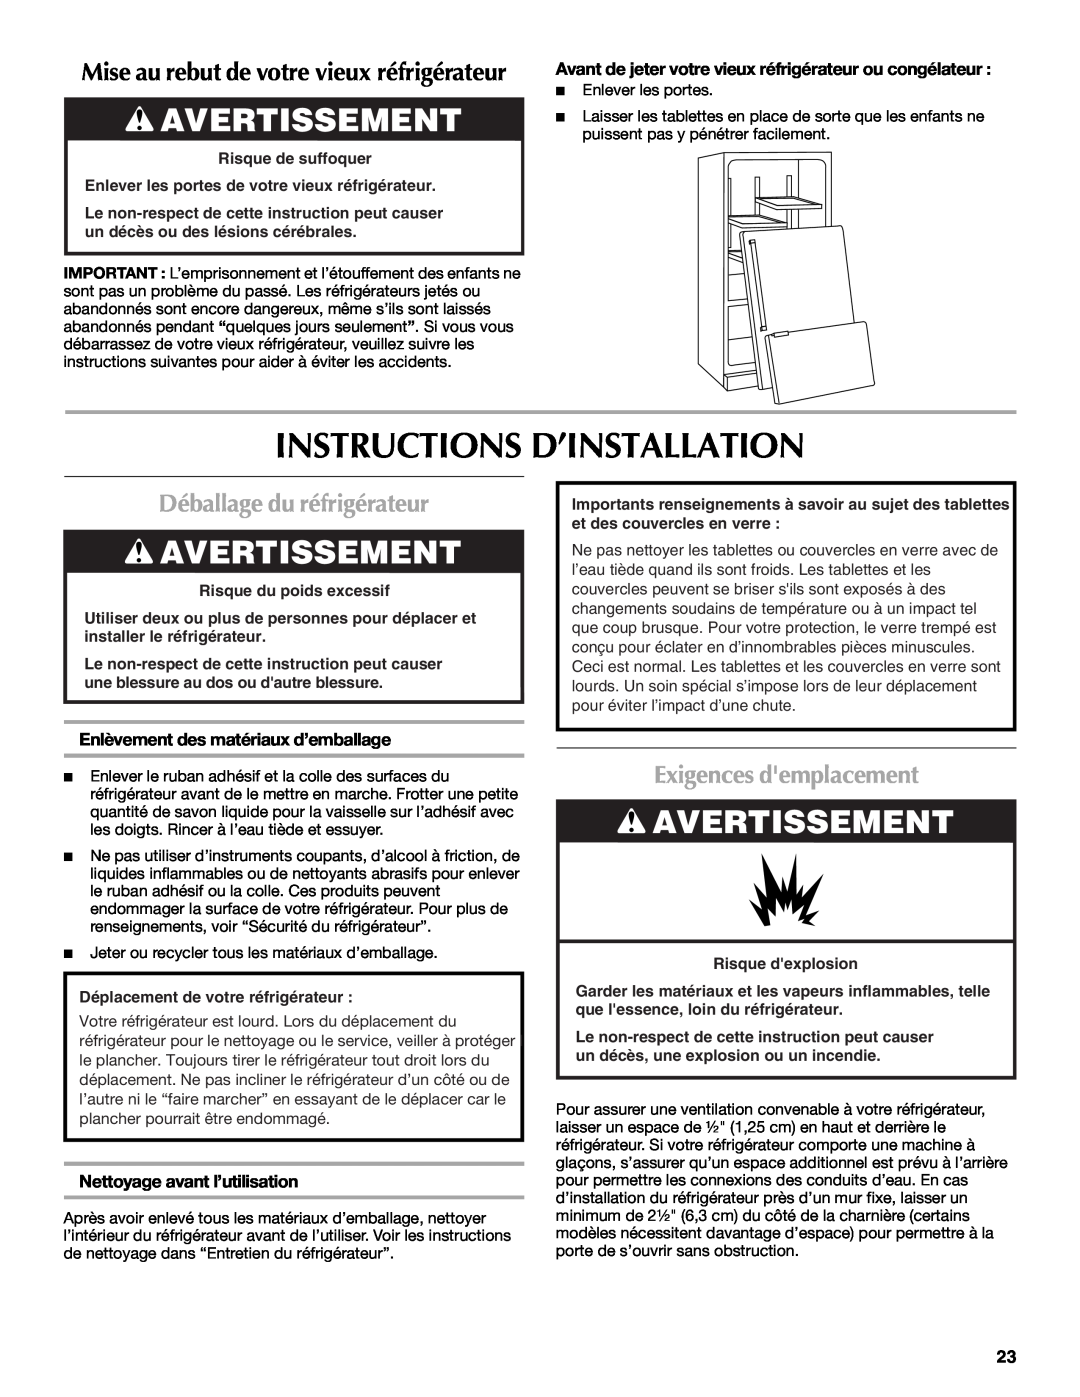 Maytag W10175446B manual Instructions D’Installation, Avertissement, Déballage du réfrigérateur, Exigences demplacement 